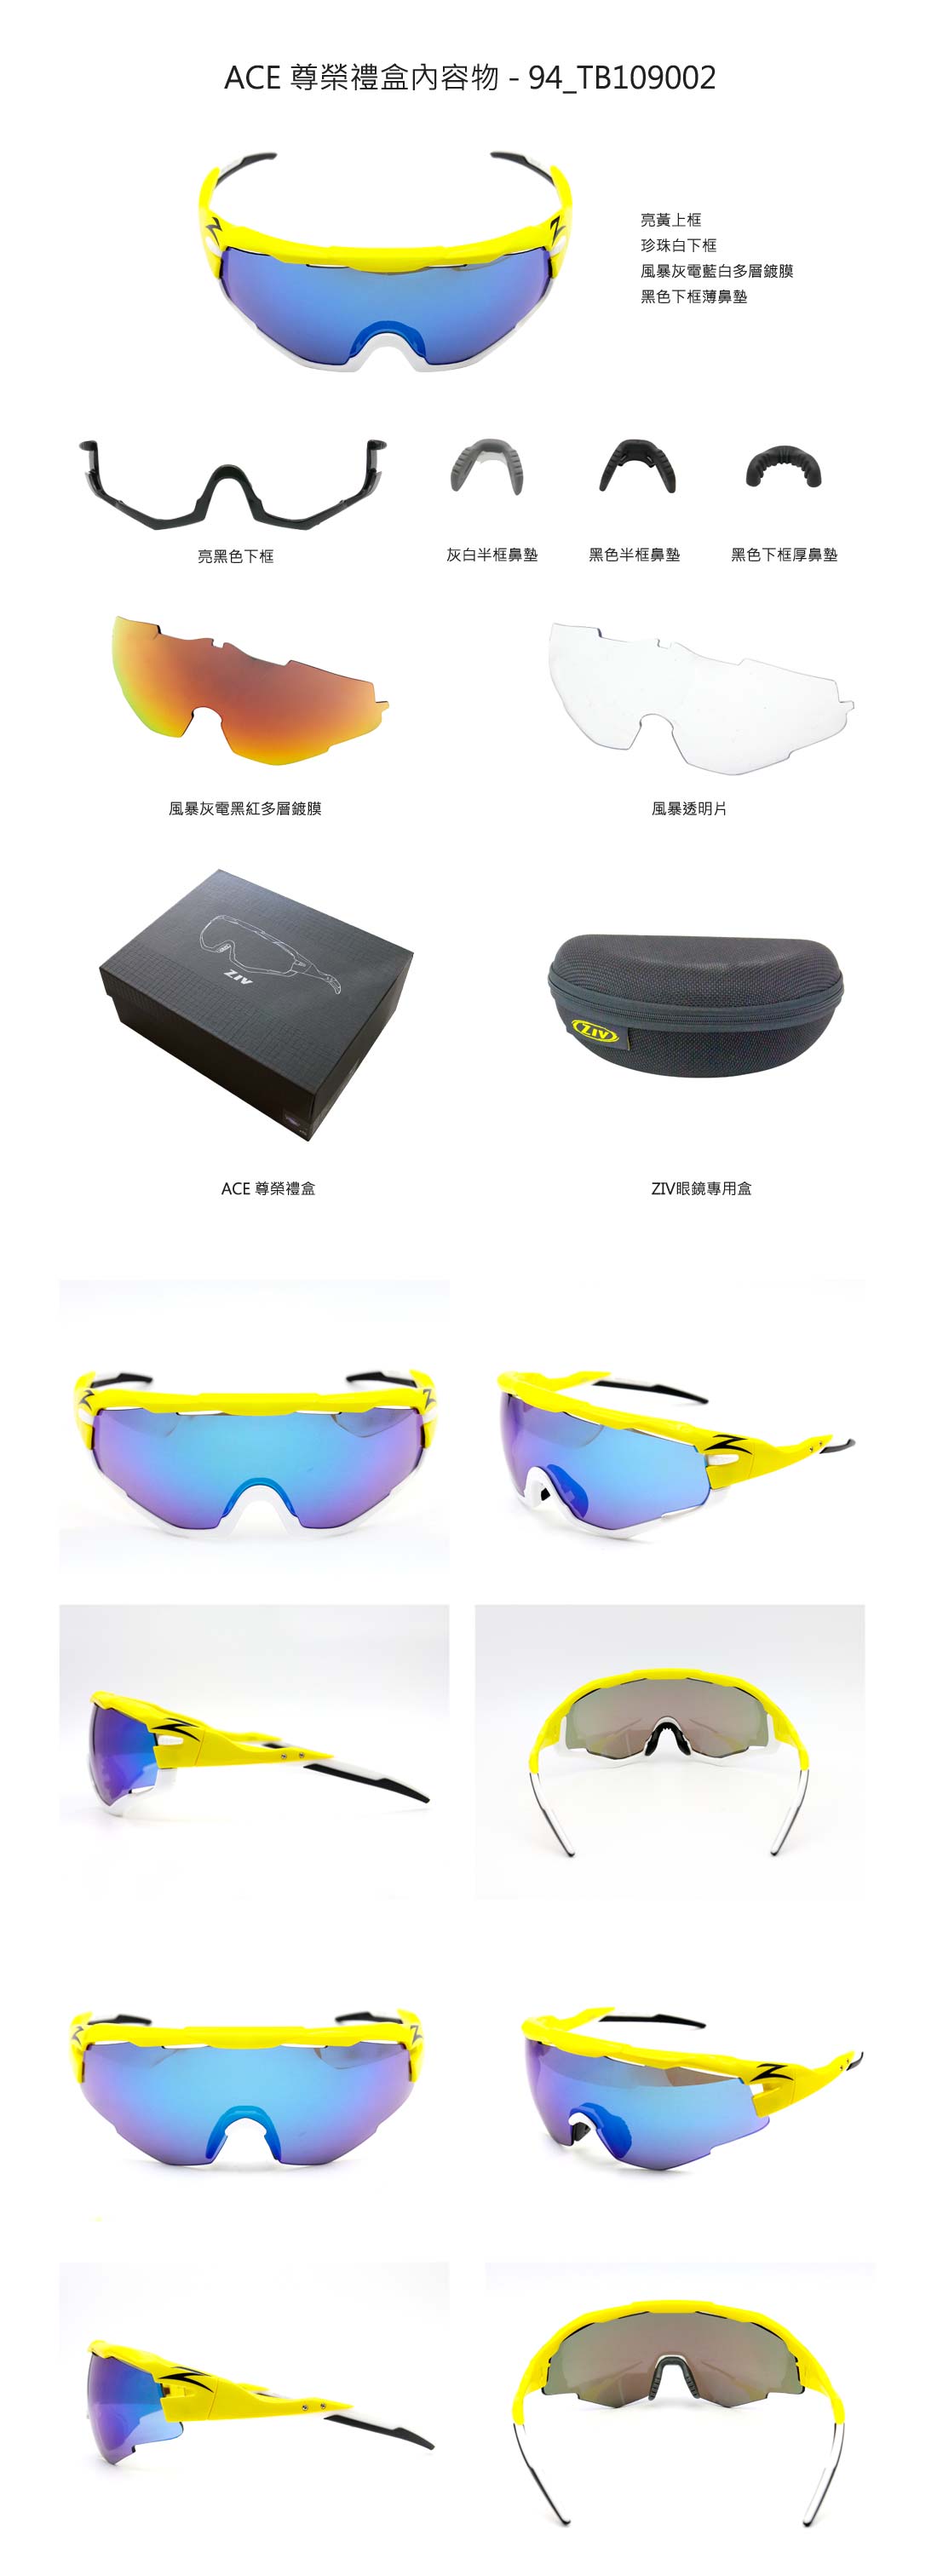 ACE,ZIV運動眼鏡,ZIV太陽眼鏡,ACE尊榮禮盒,ACE 尊榮禮盒內容物 - 94_TB109002